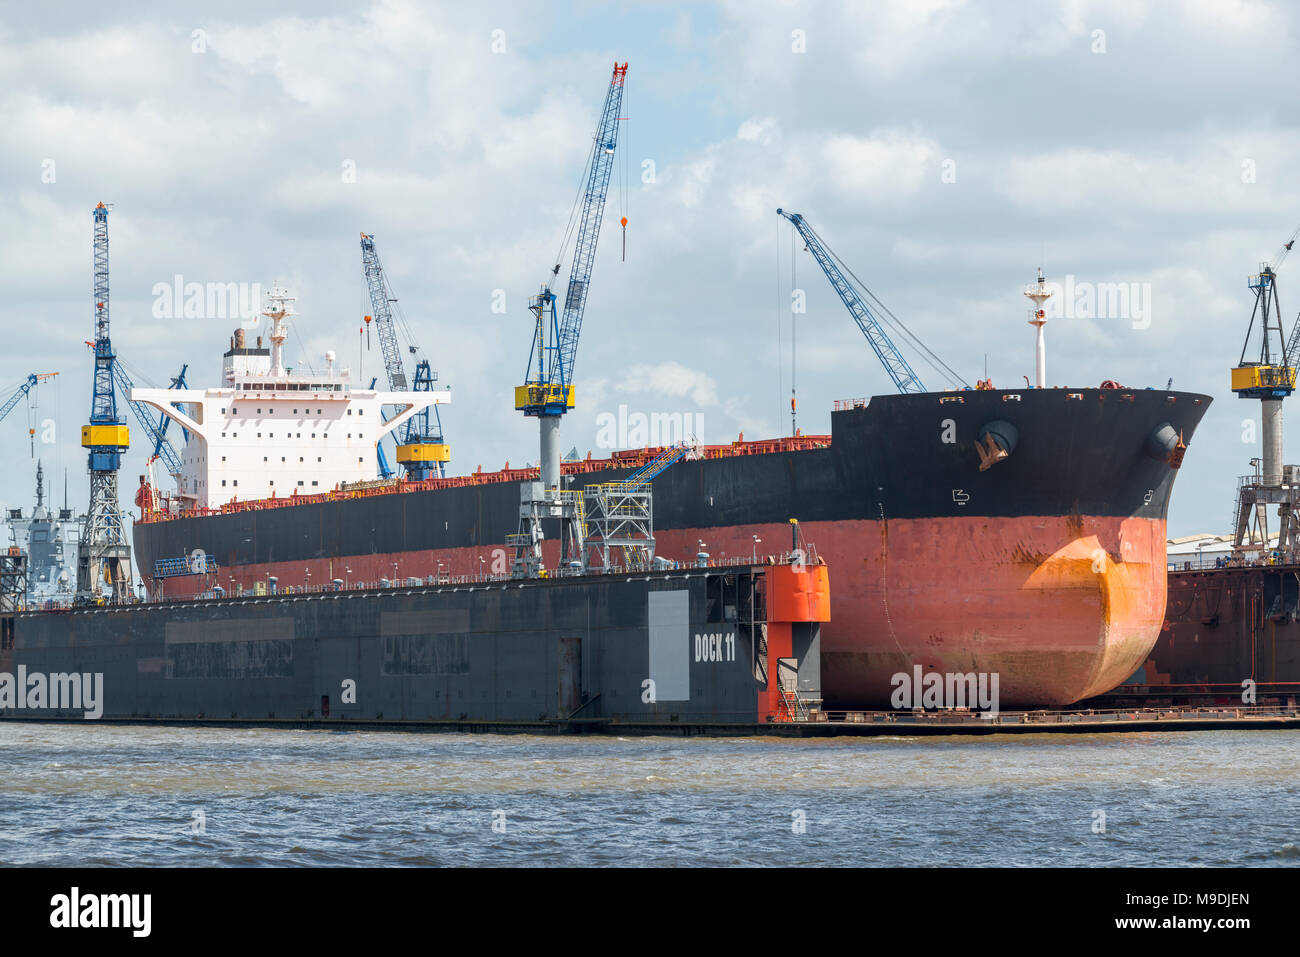 Werft in Hamburg, Deutschland Stock Photo